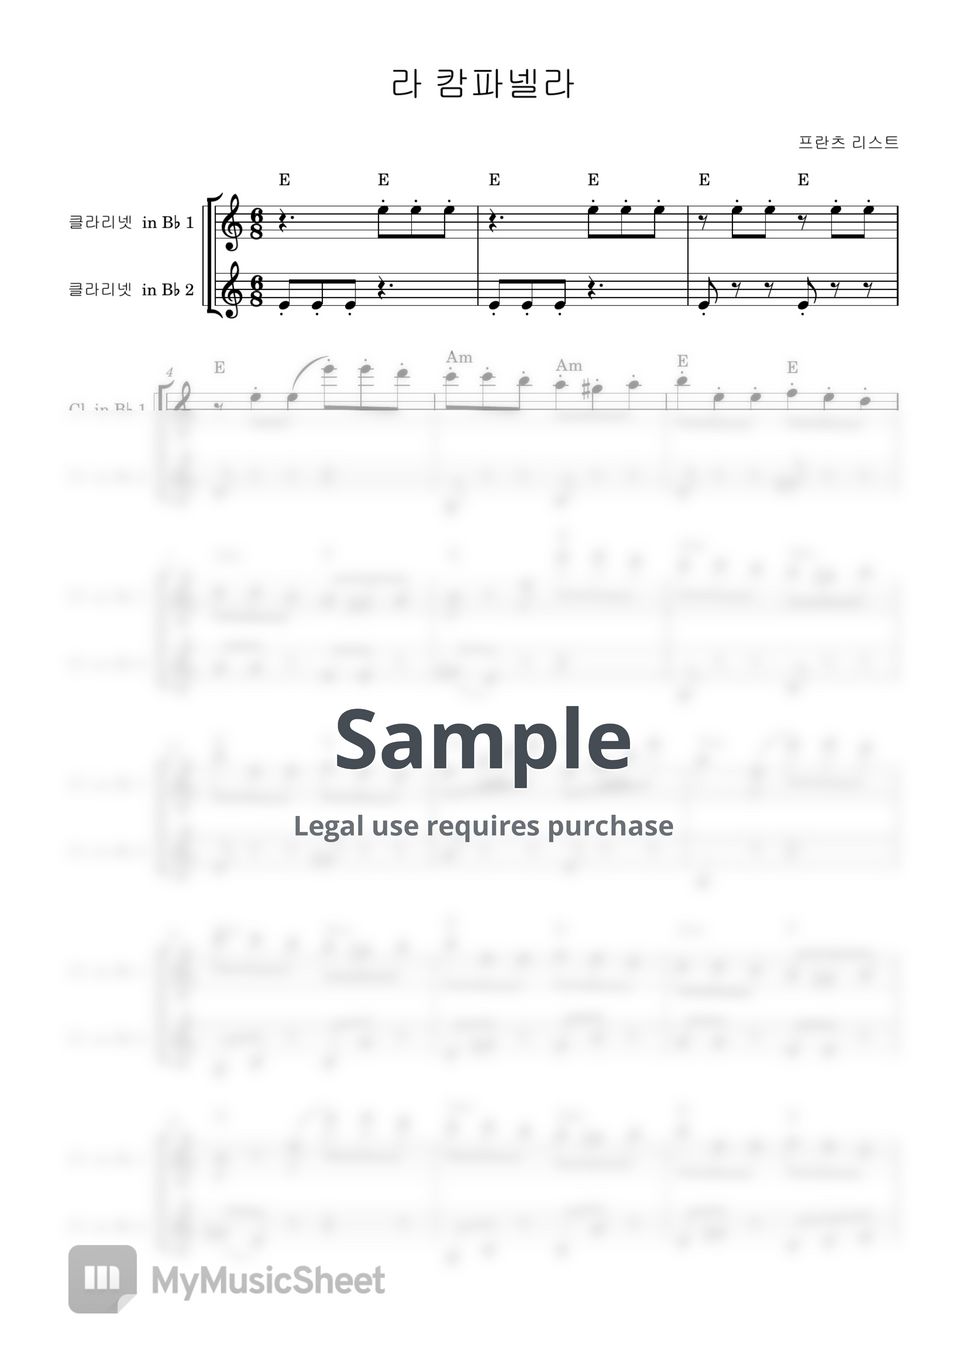 프란츠 리스트 - 라 캄파넬라 (클라리넷 듀엣곡) by salon de clarinet